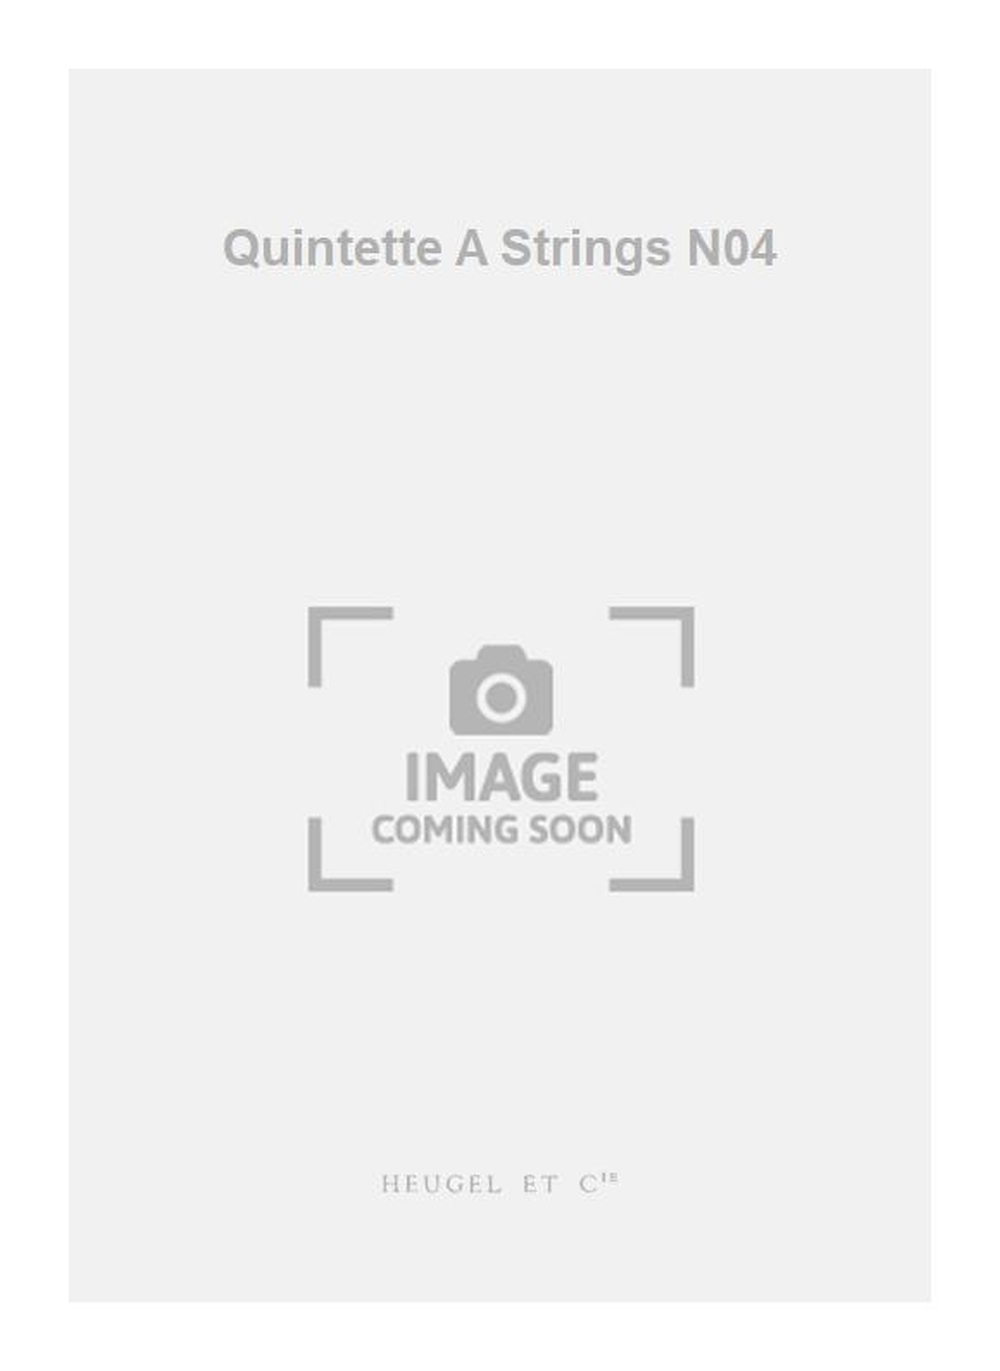 Darius Milhaud: Quintette A Strings N04